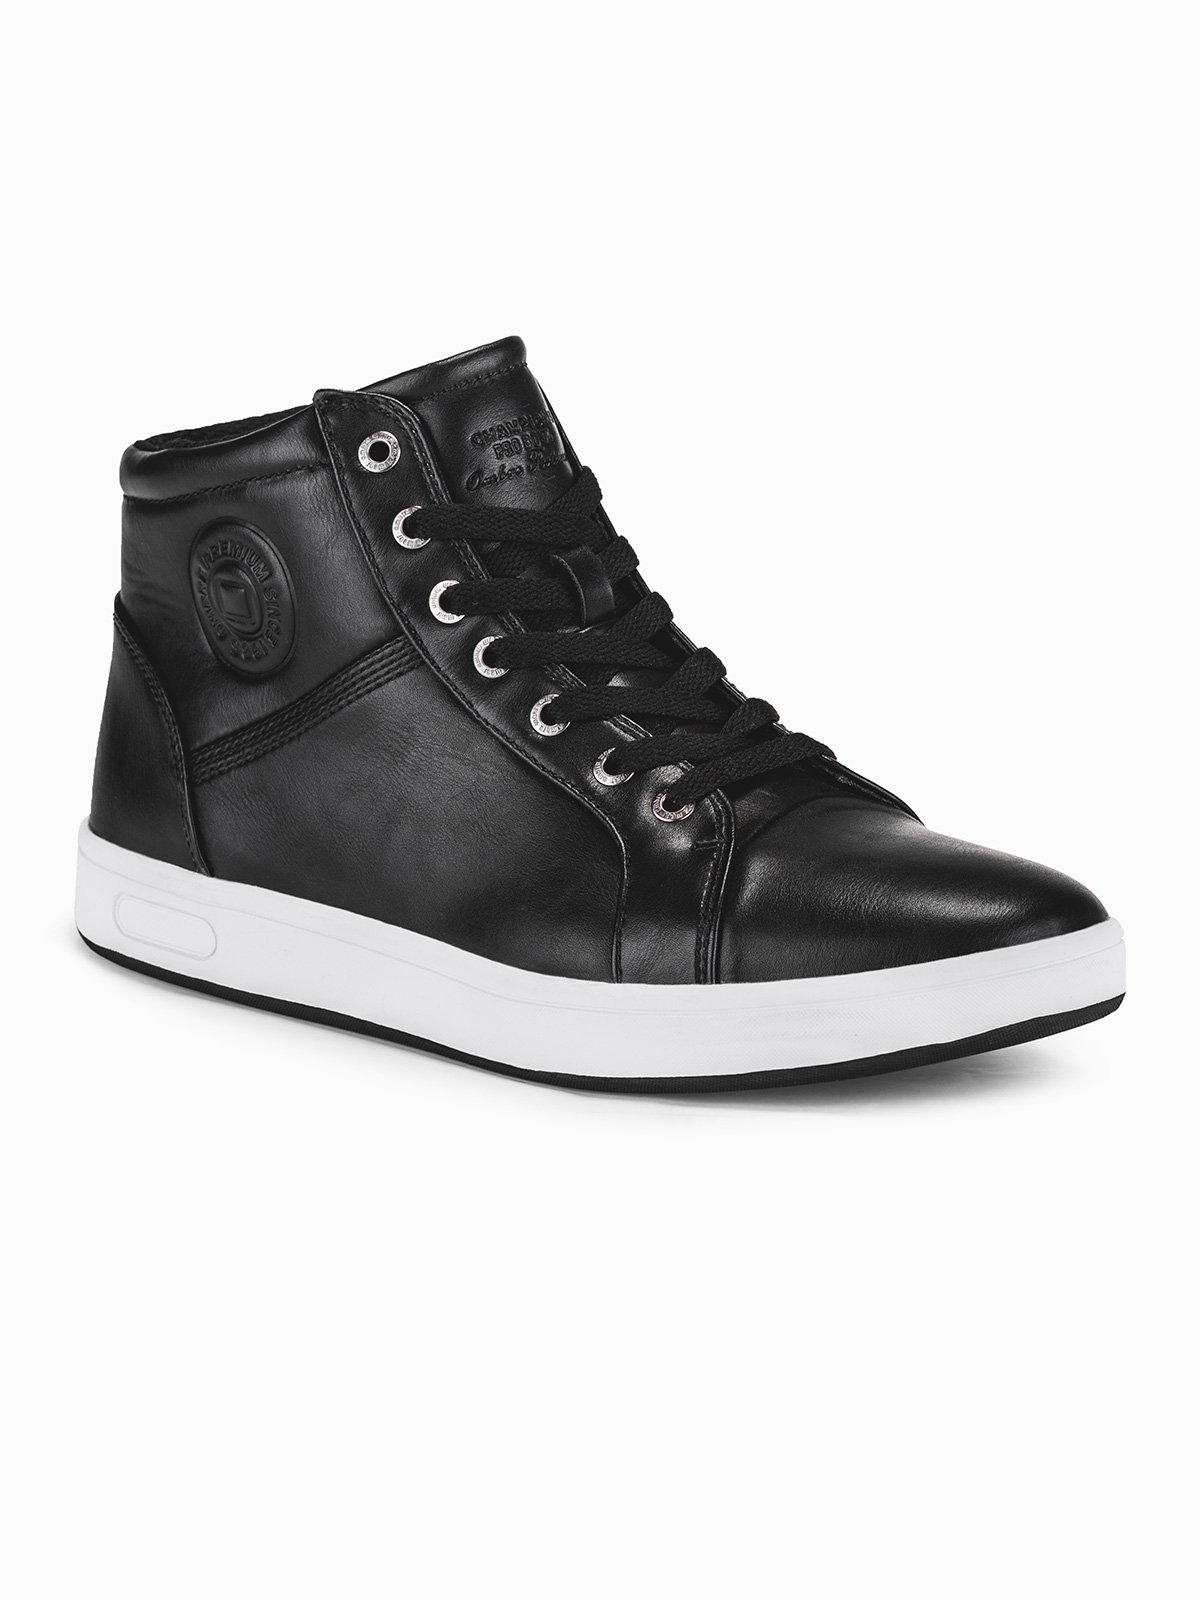 Men's ankle shoes T328 - black | MODONE wholesale - Clothing For Men